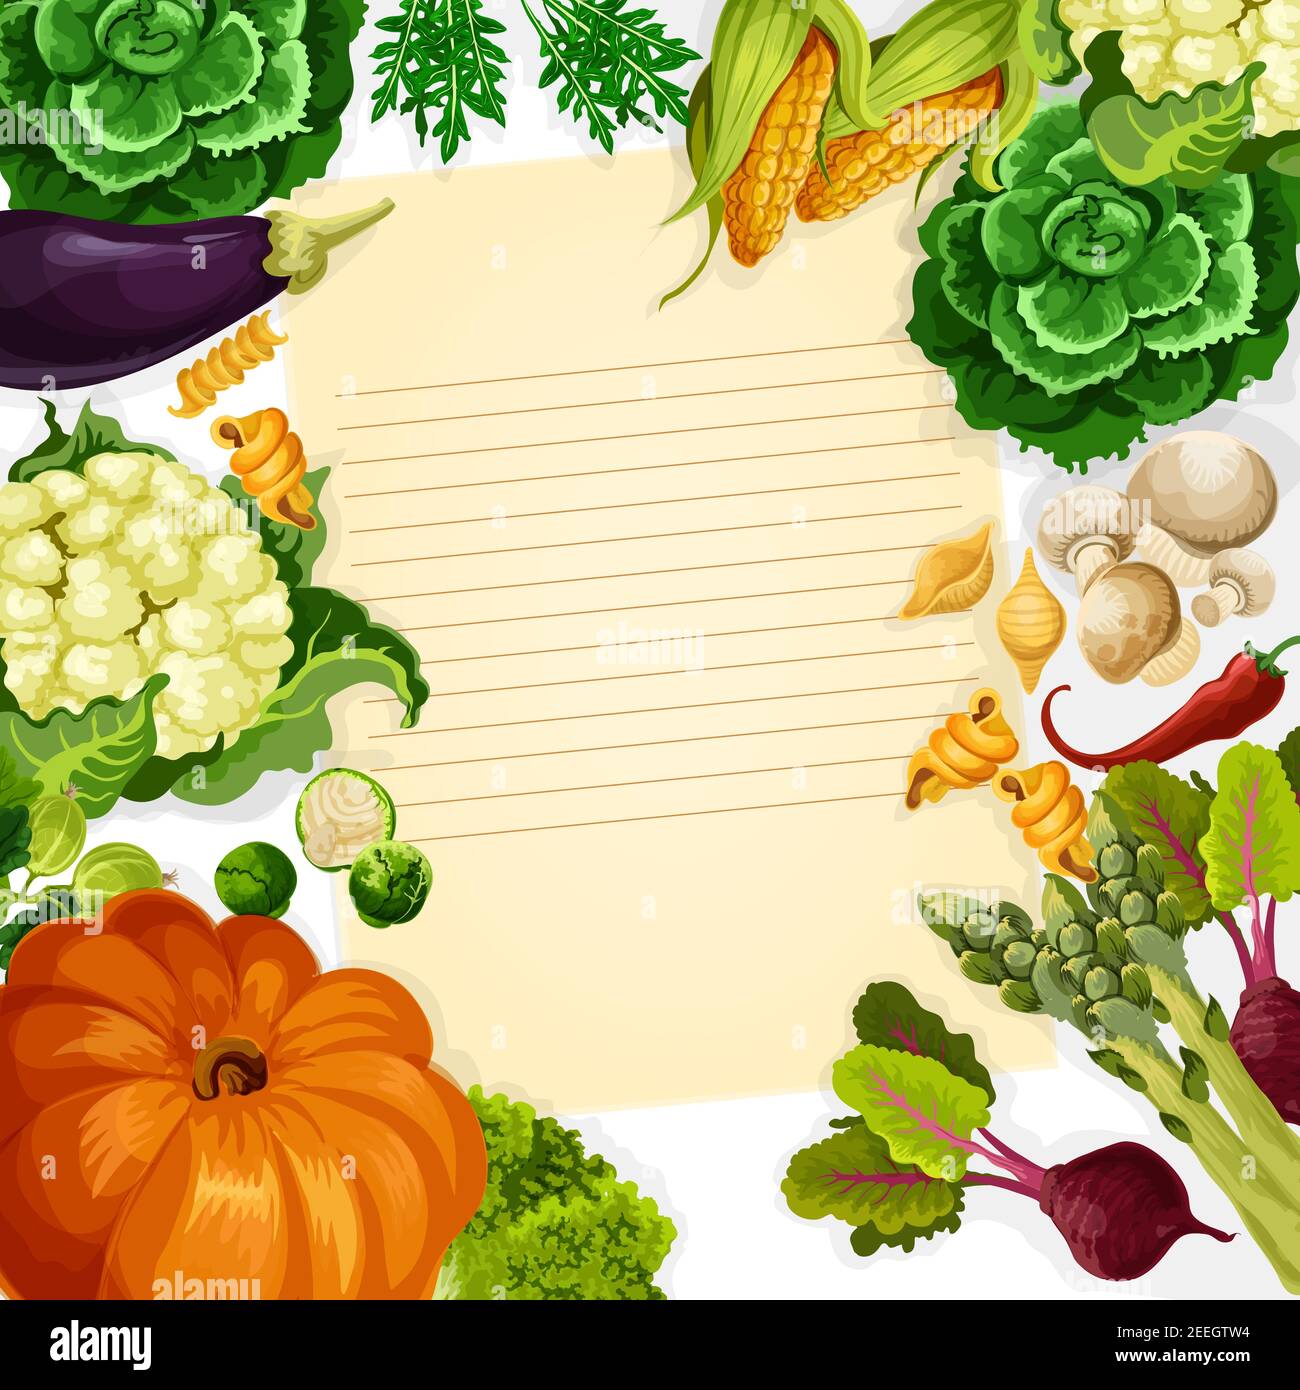 Ricetta di cottura modello vettoriale di verdure e verdure fattoria raccolta di zucca, carote e cavolo o zucca zucchina. Pomodoro fresco, patate o cucum Illustrazione Vettoriale